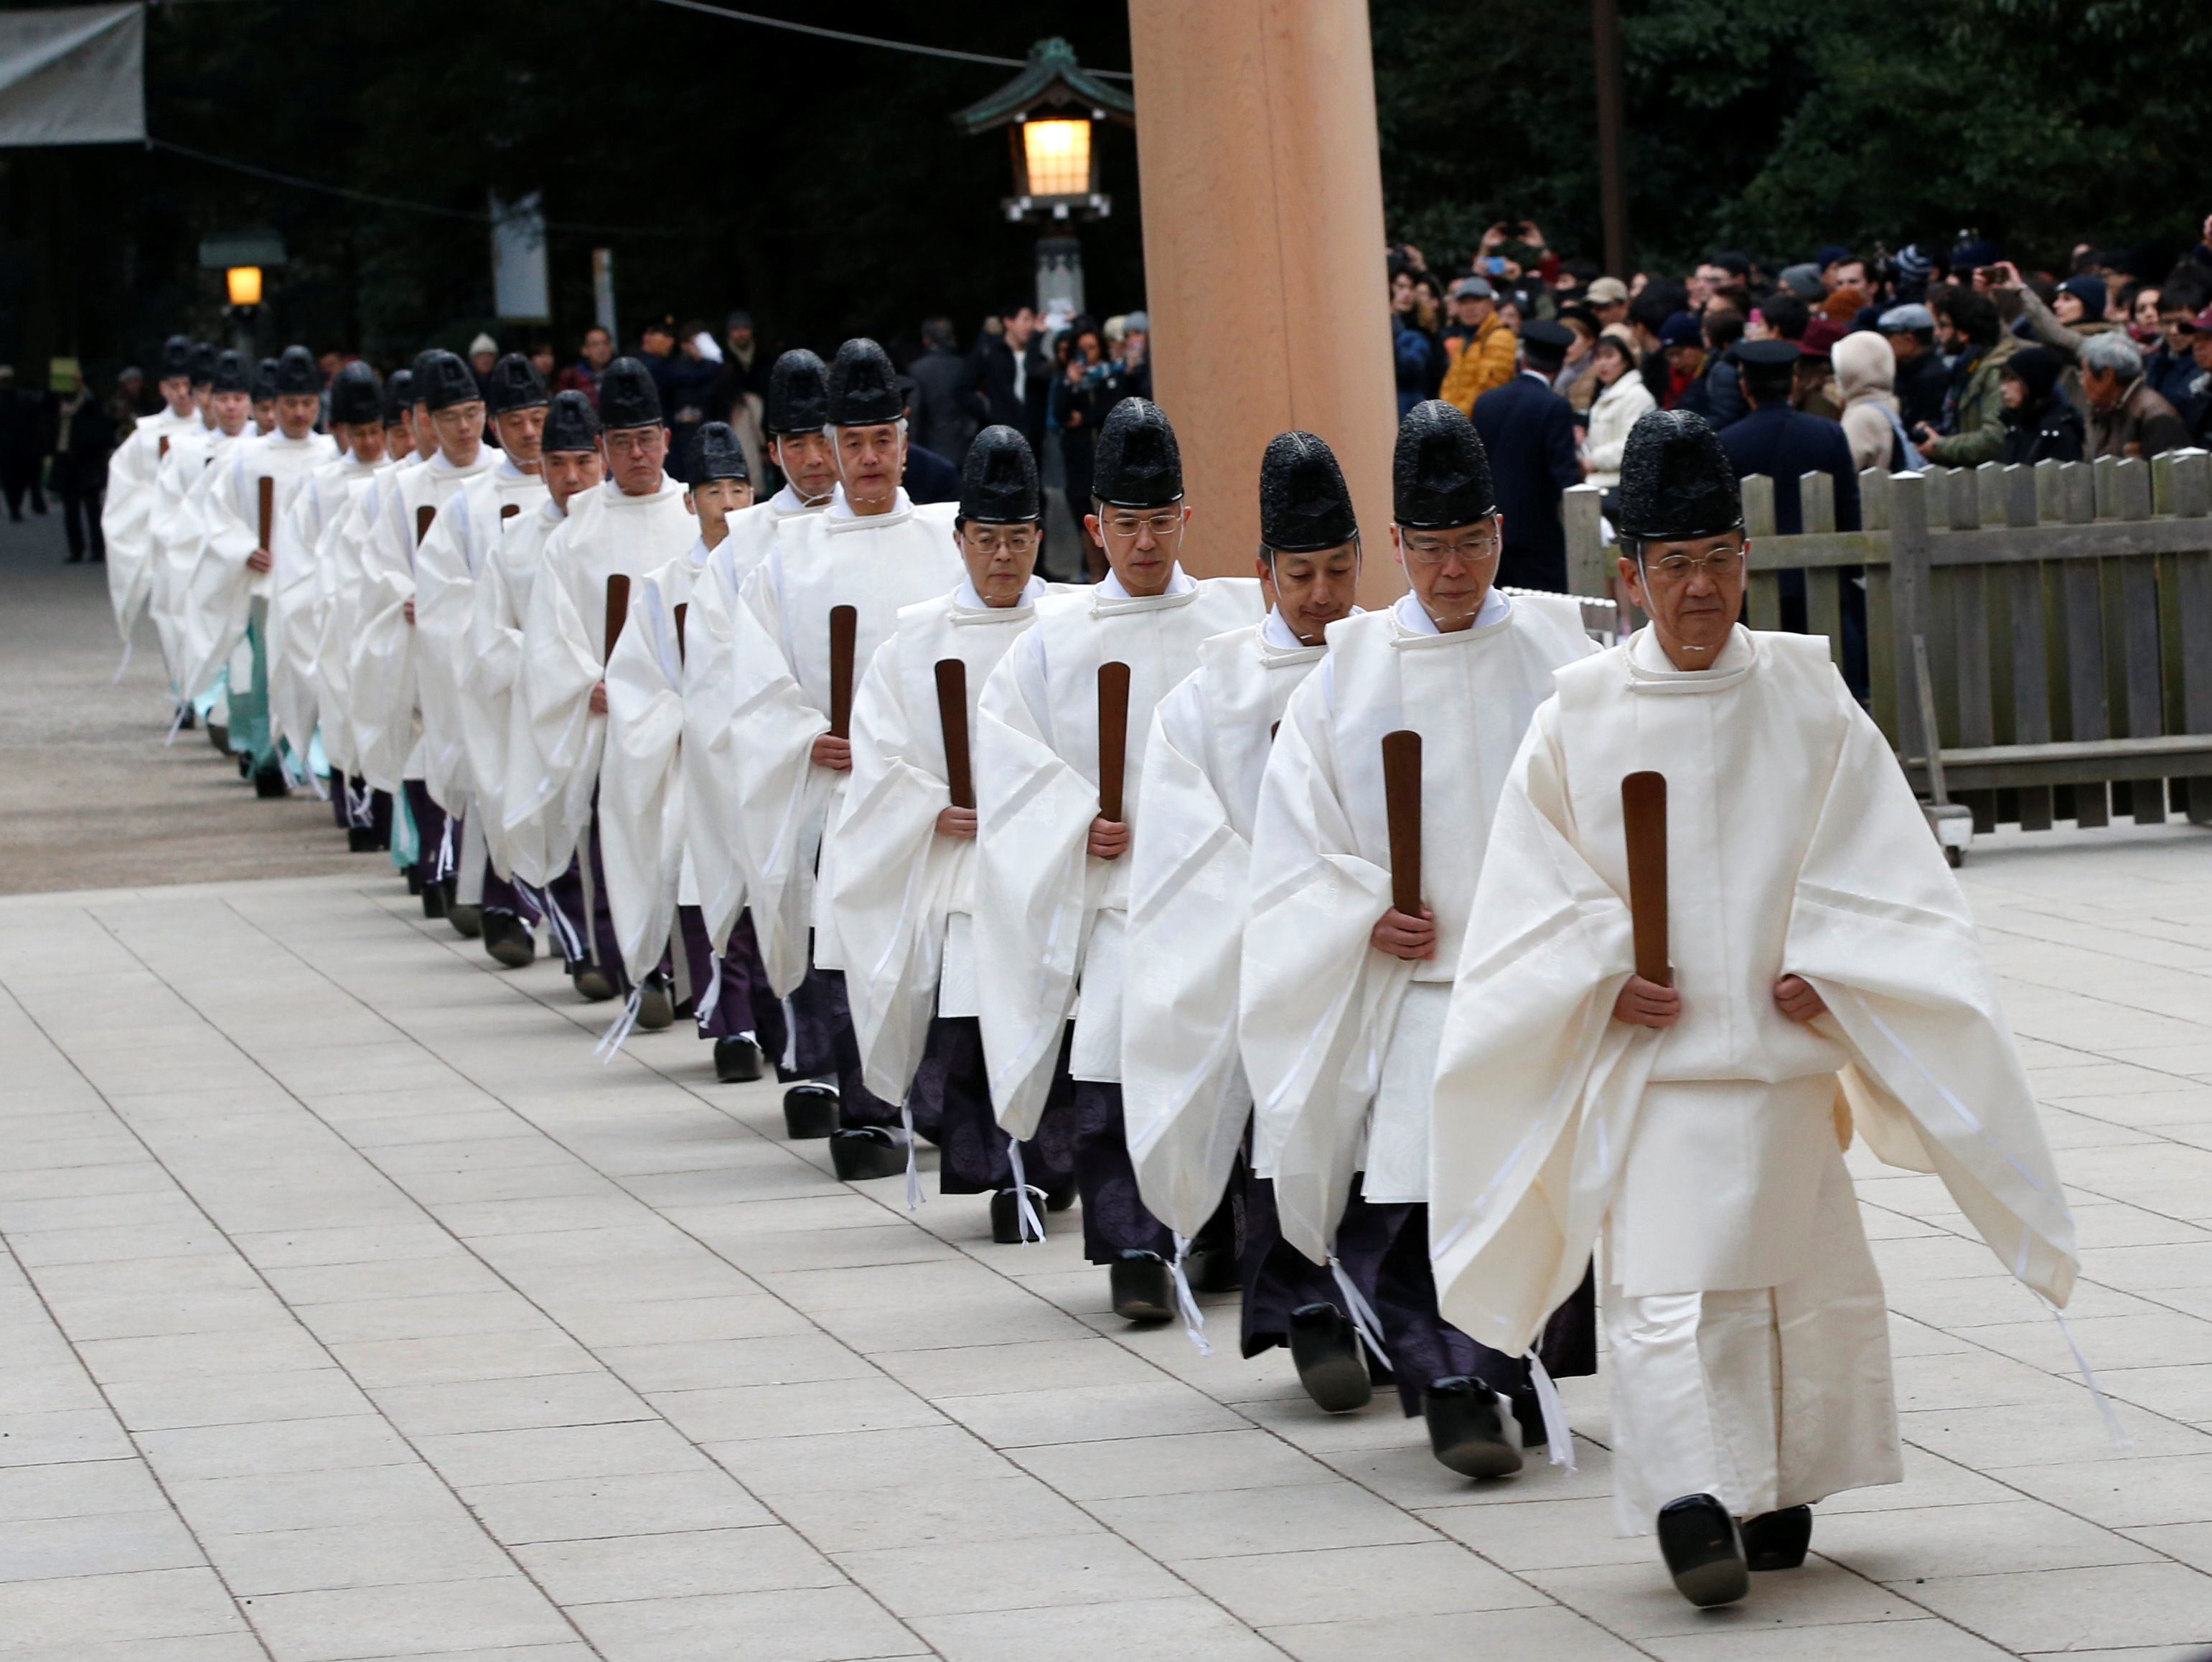 كهنة الشنتو يحتفلون بالعام الجديد فى اليابان